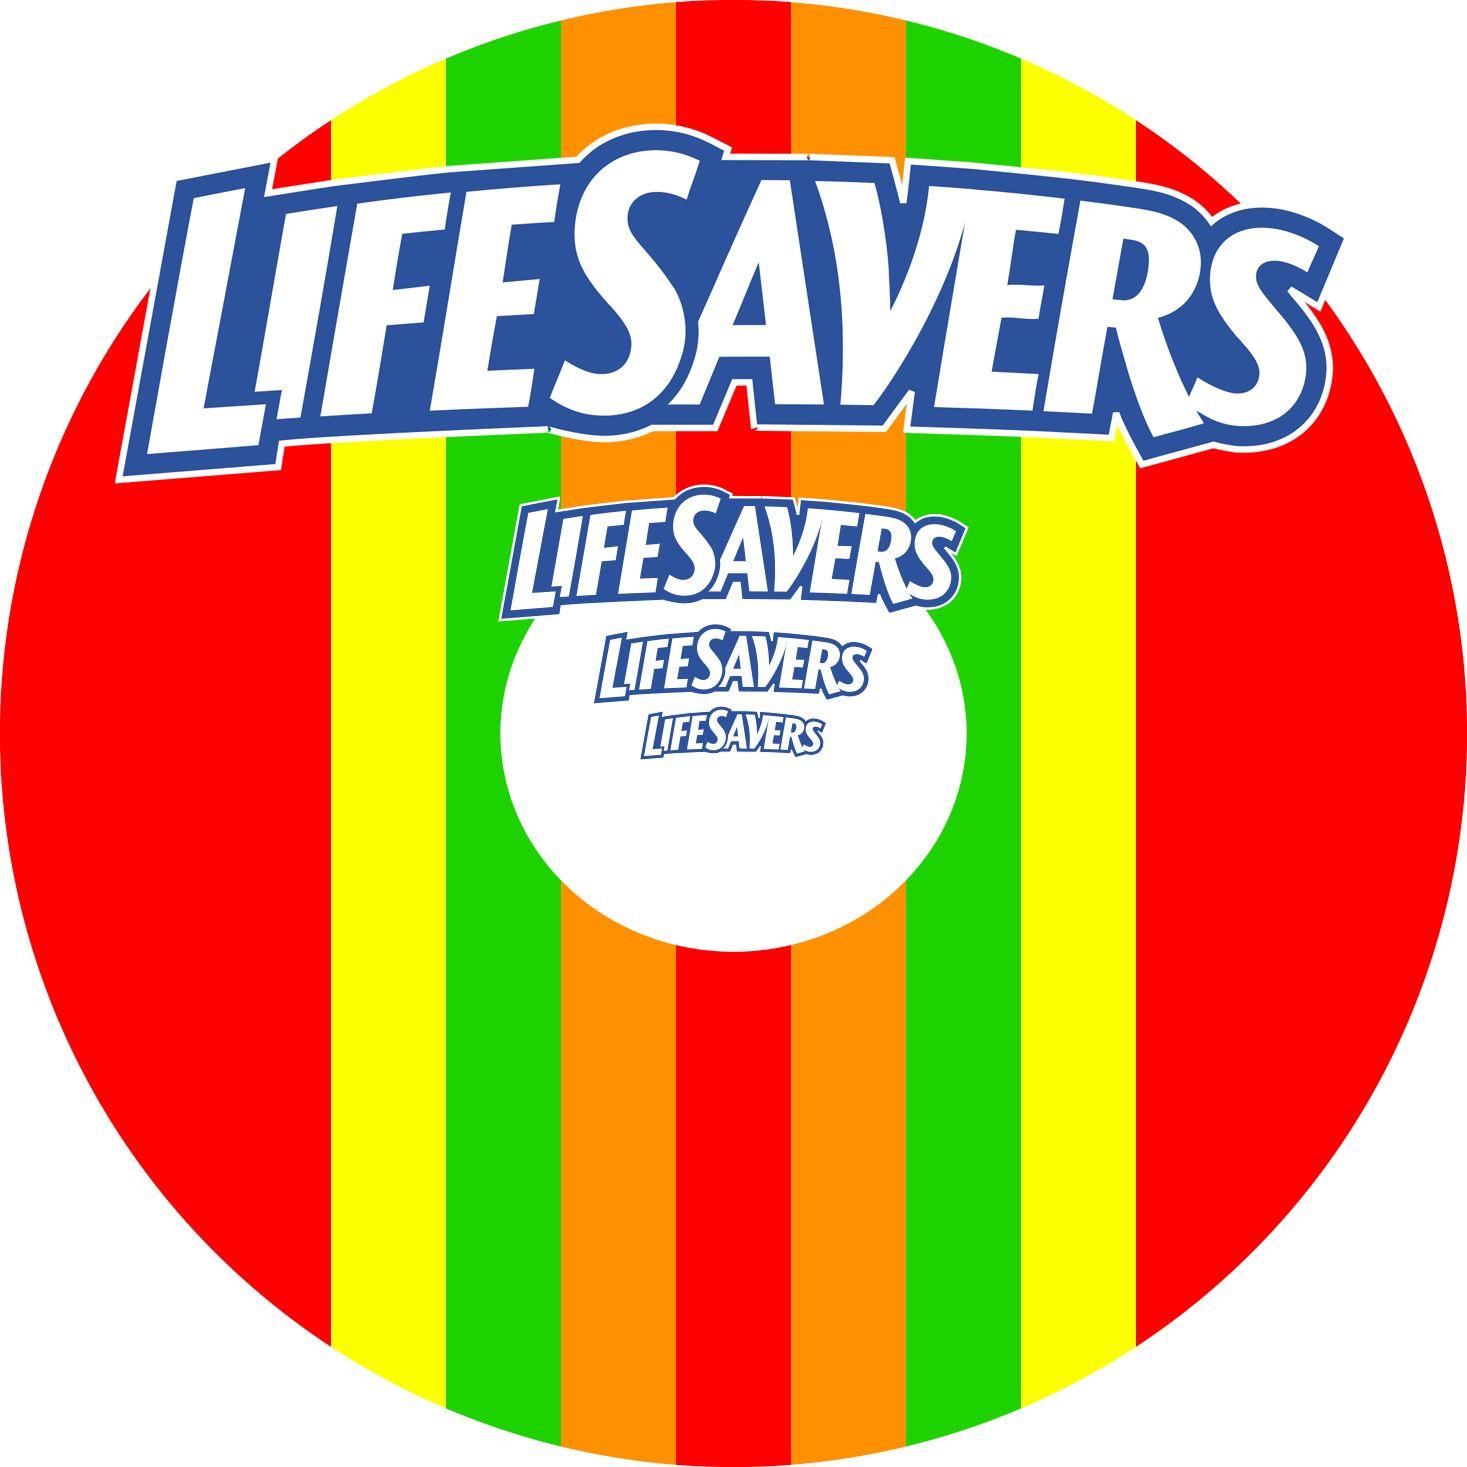 Lifesavers Logo - Lifesaver Logos